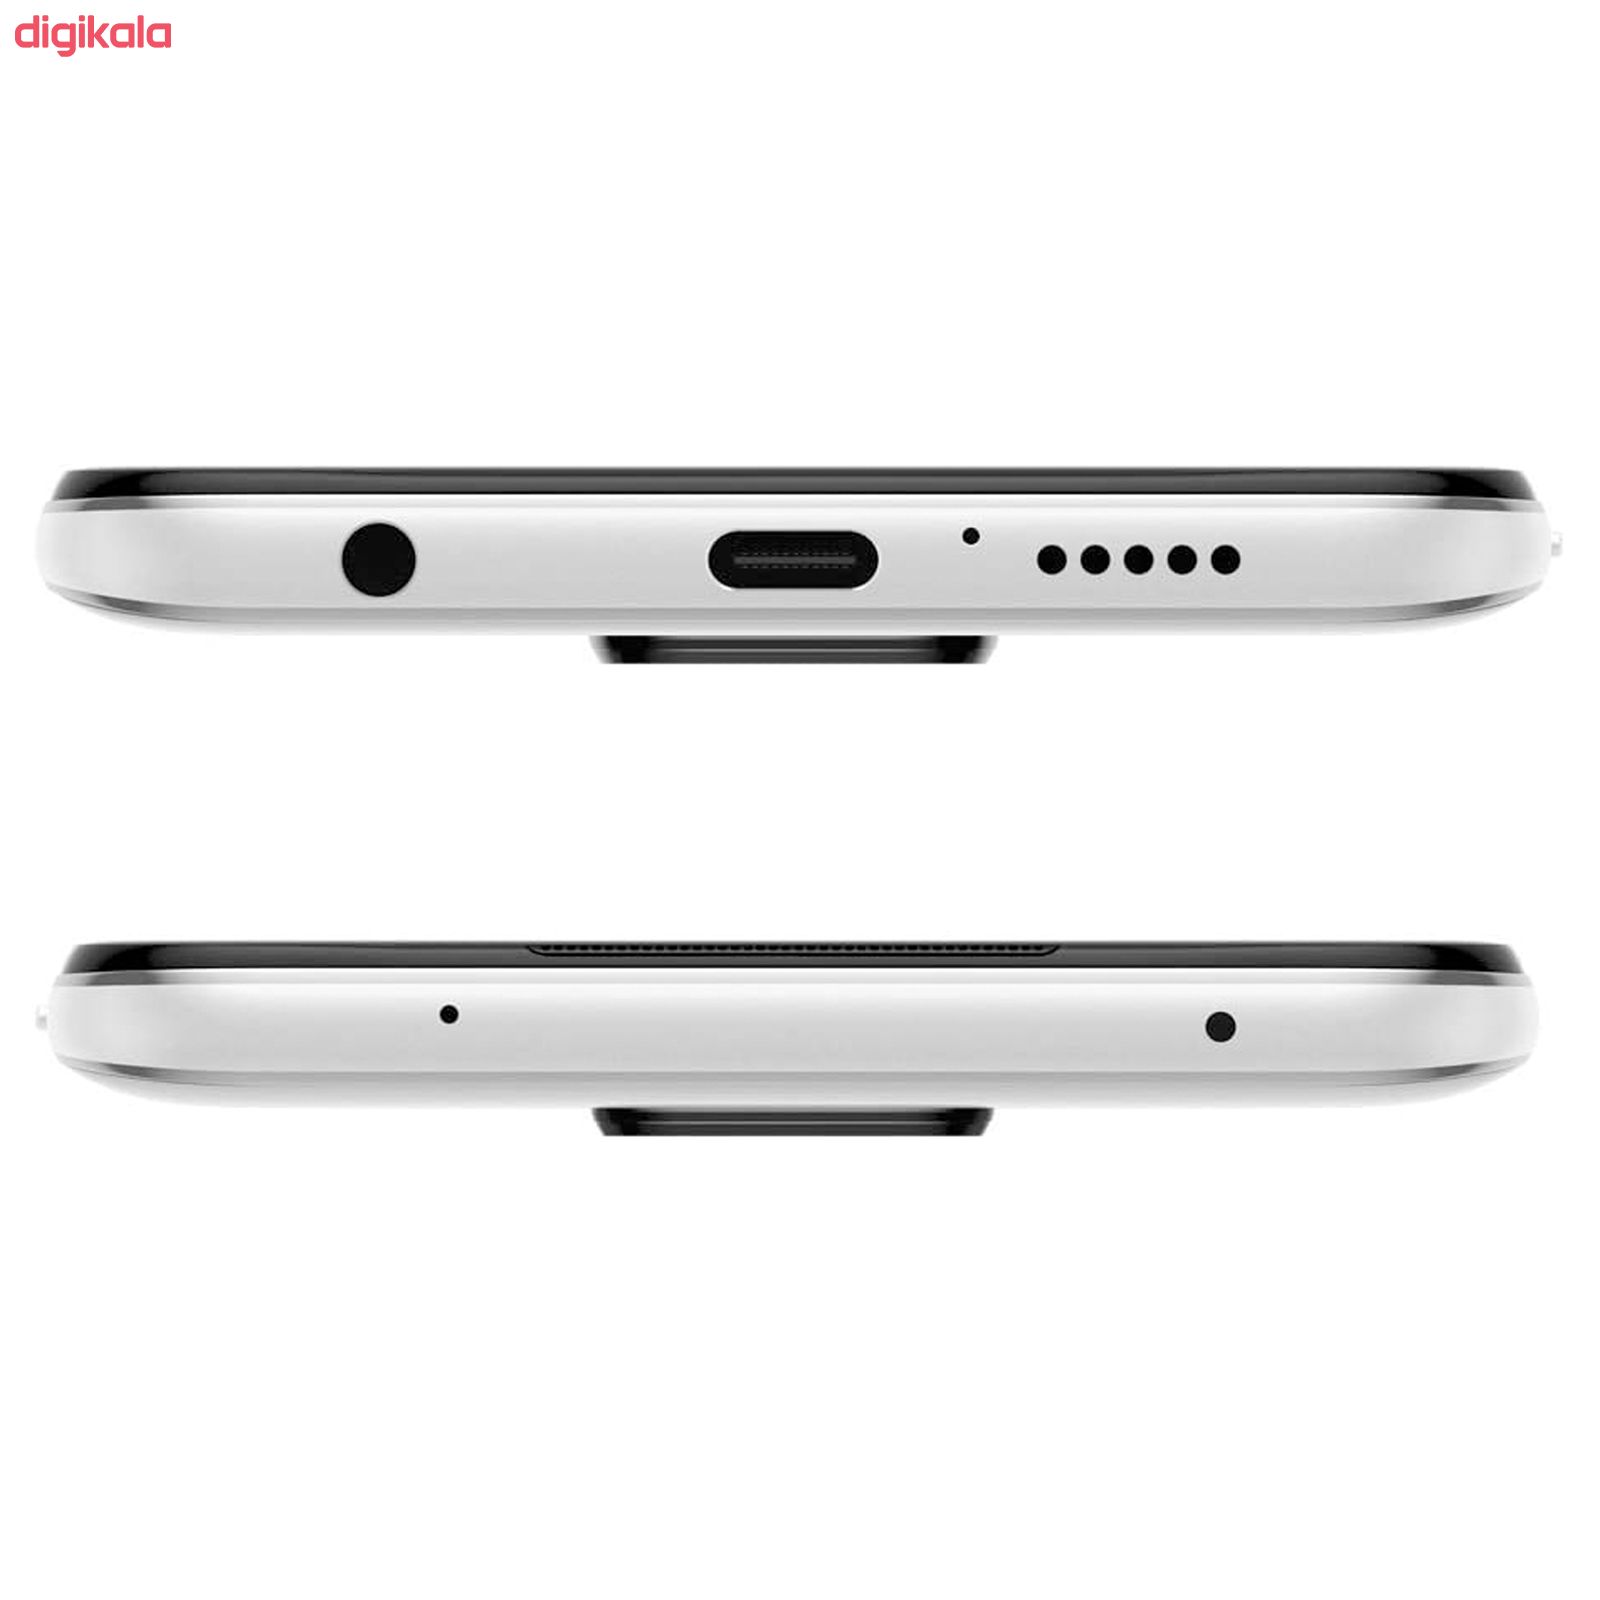 گوشی موبایل شیائومی مدل Redmi Note 9S M2003J6A1G دو سیم‌ کارت ظرفیت 128گیگابایت